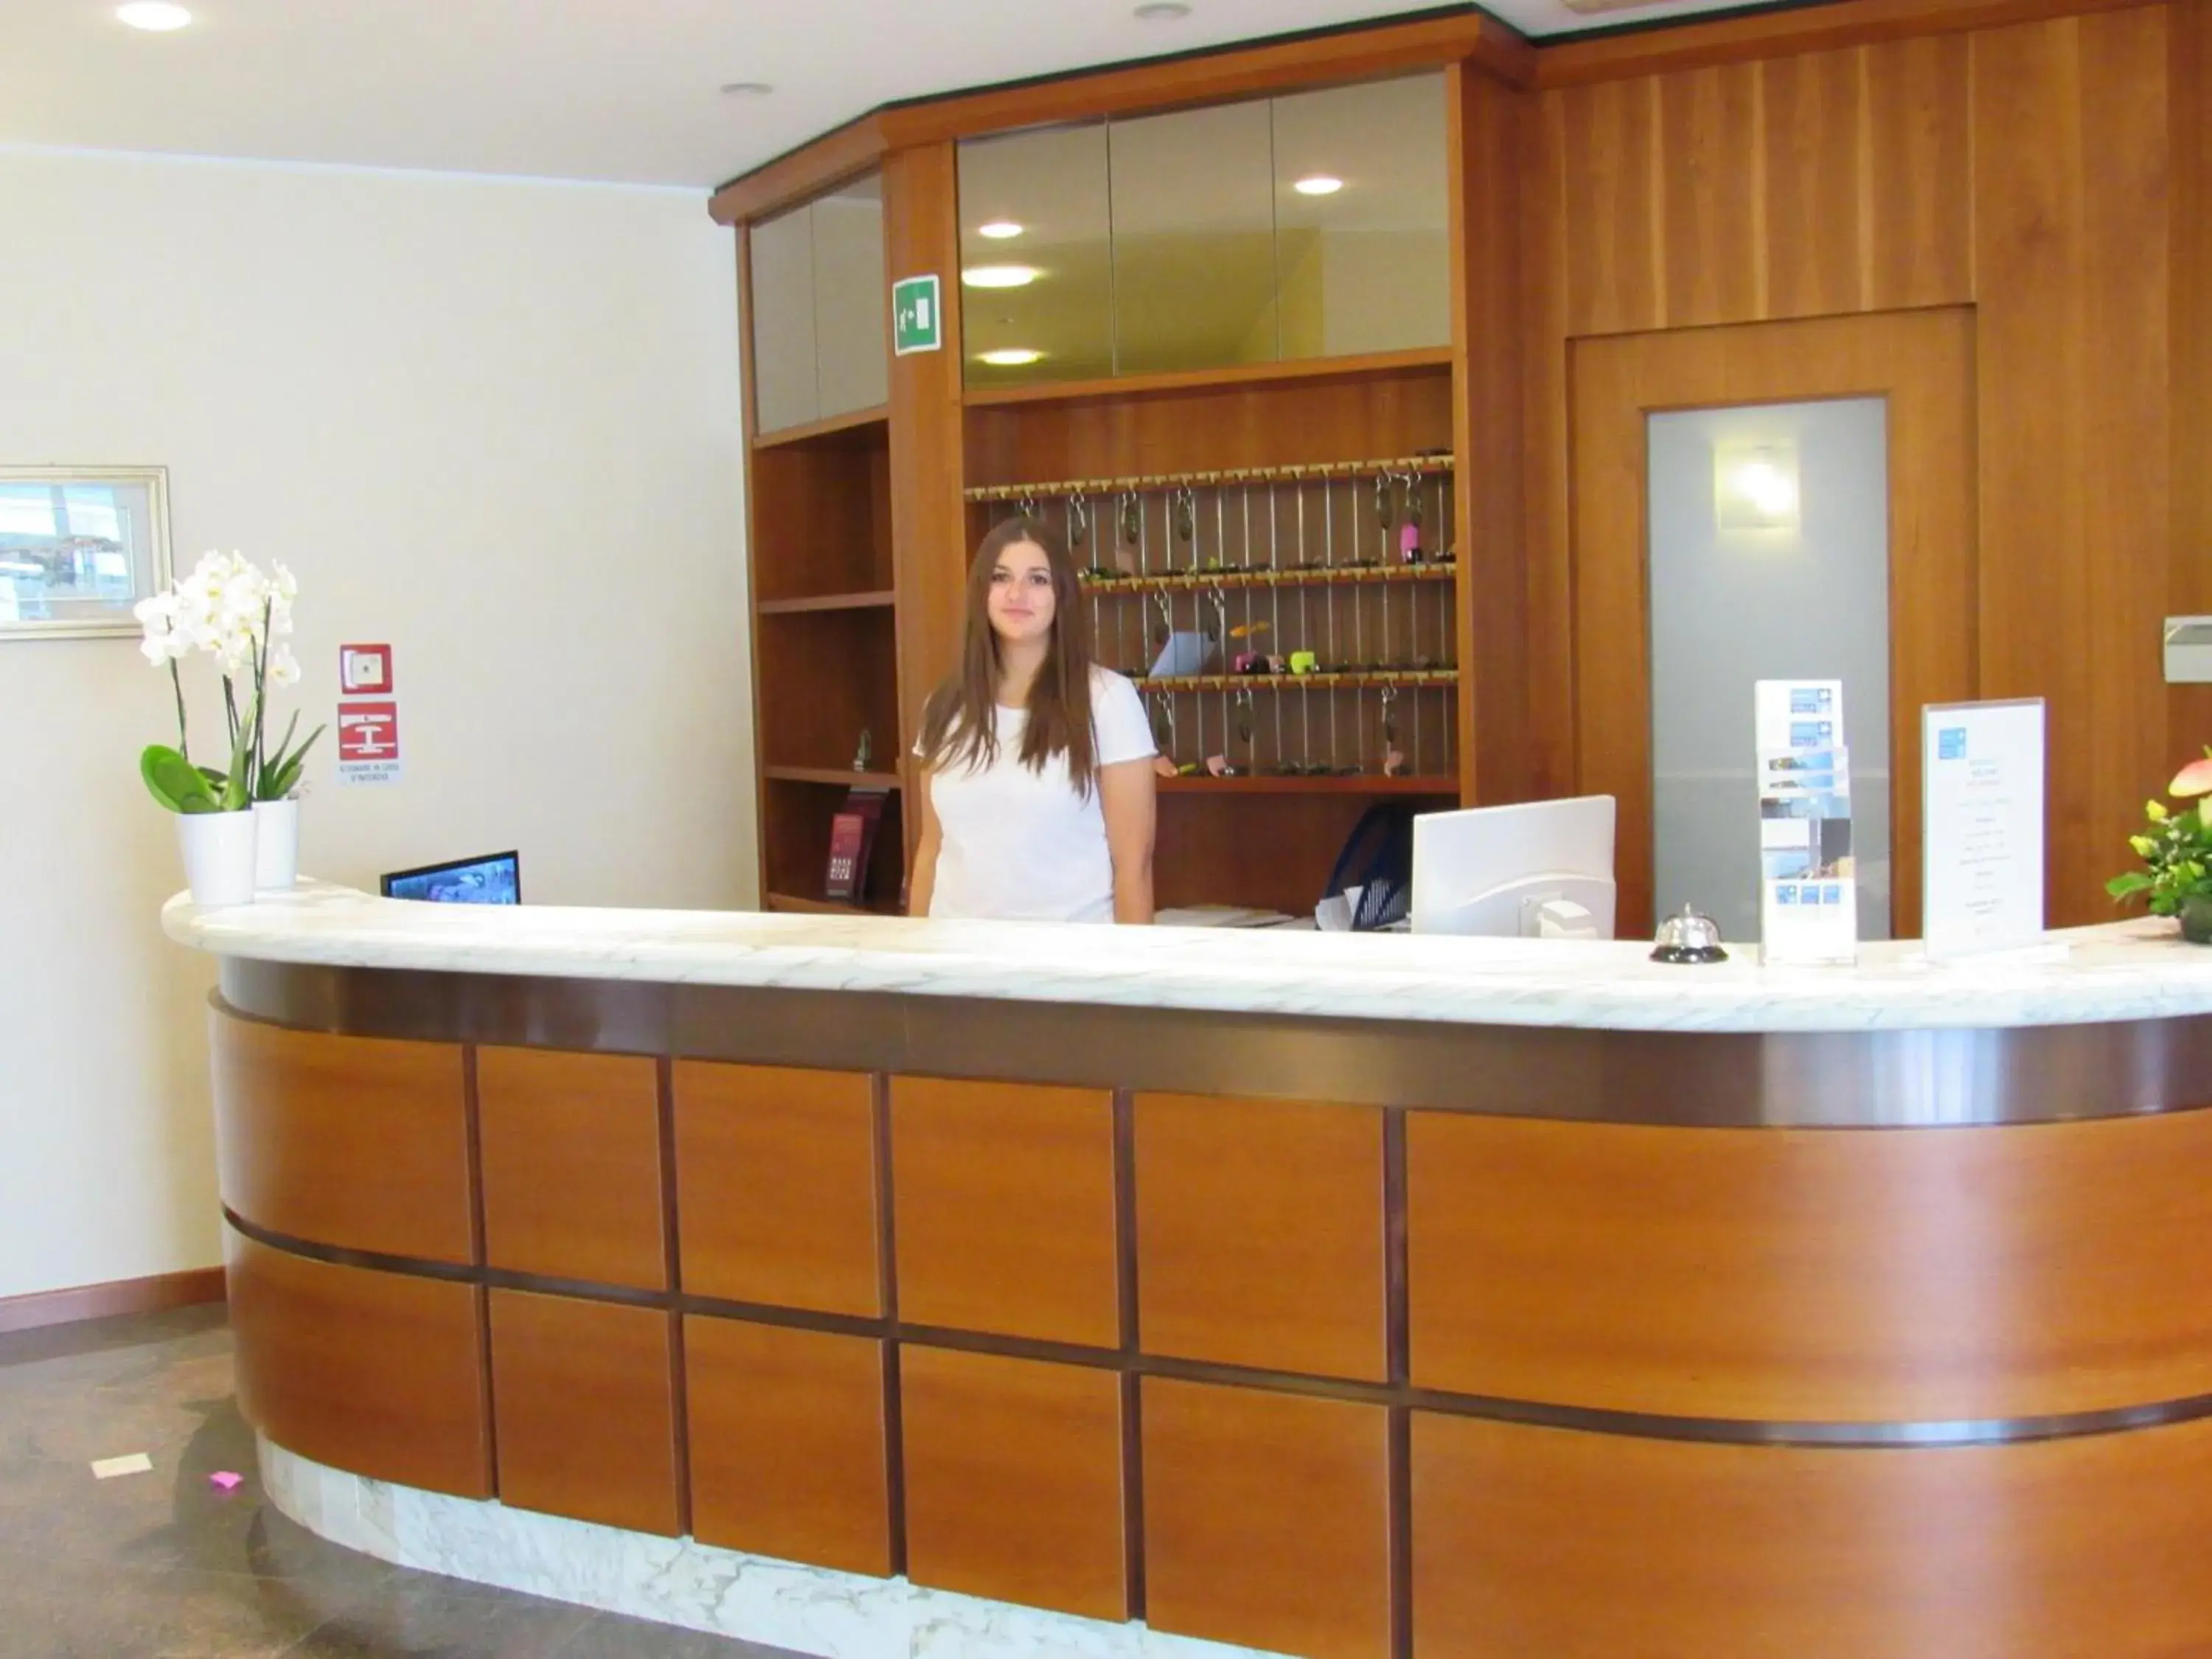 Lobby or reception, Lobby/Reception in Hotel Stella Maris